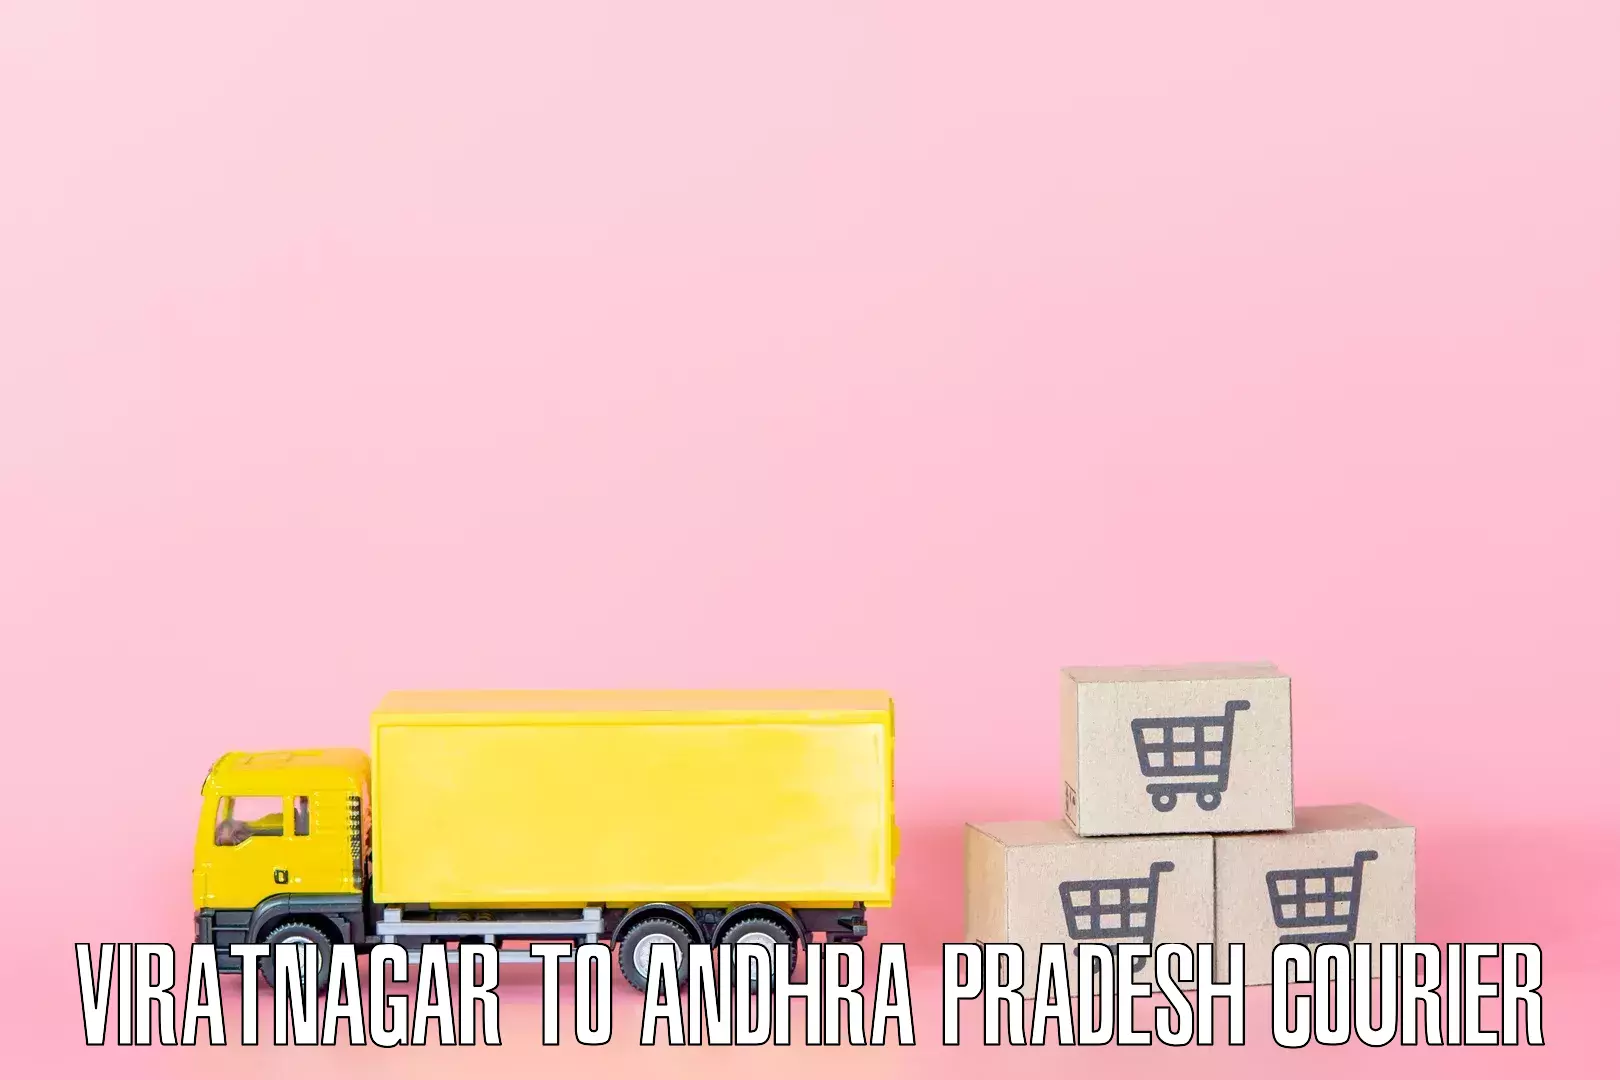 Moving and packing experts Viratnagar to Andhra Pradesh